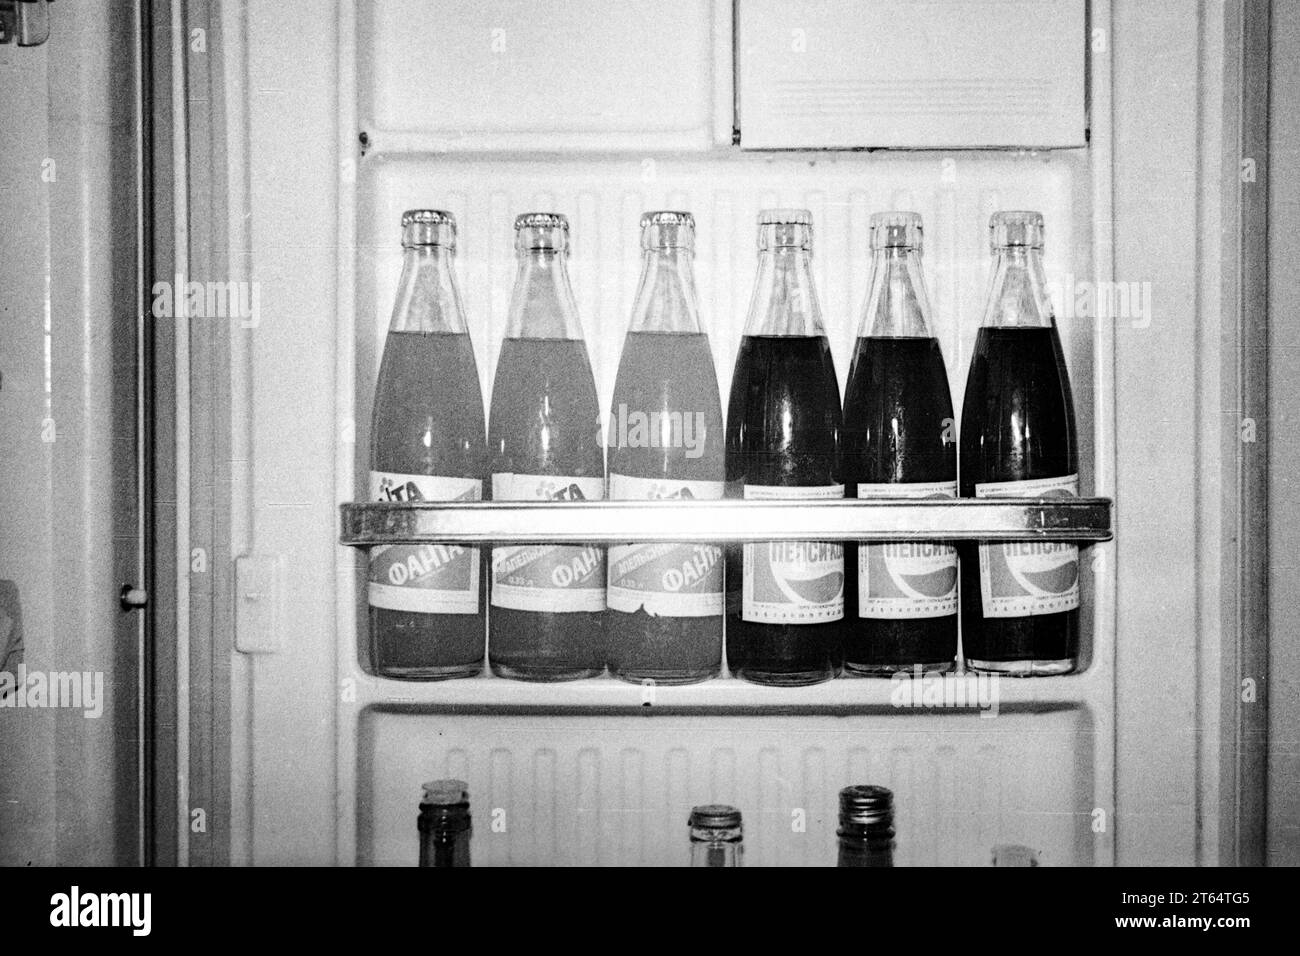 Mosca, URSS - circa 1982: Bottiglie di Fanta e Pepsi-Cola nella porta del frigorifero. Scansione di pellicole in bianco e nero da 35 mm Foto Stock